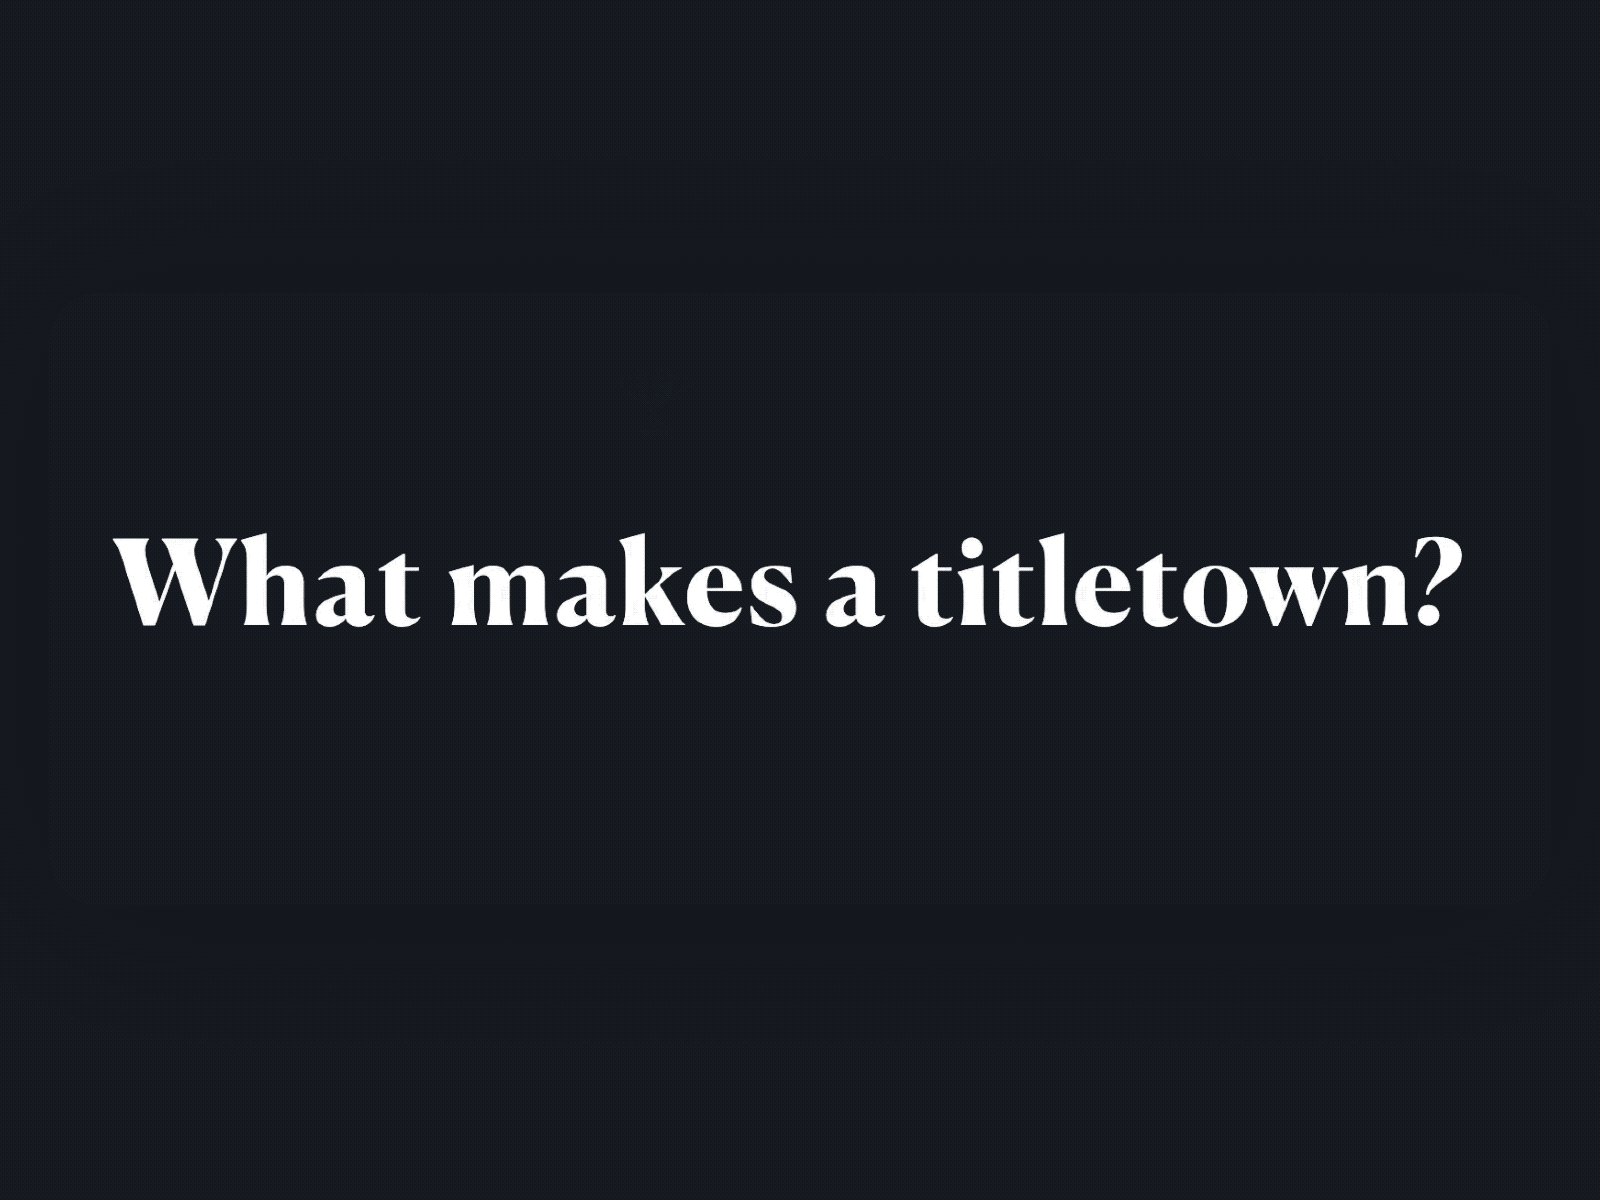 Titletowns